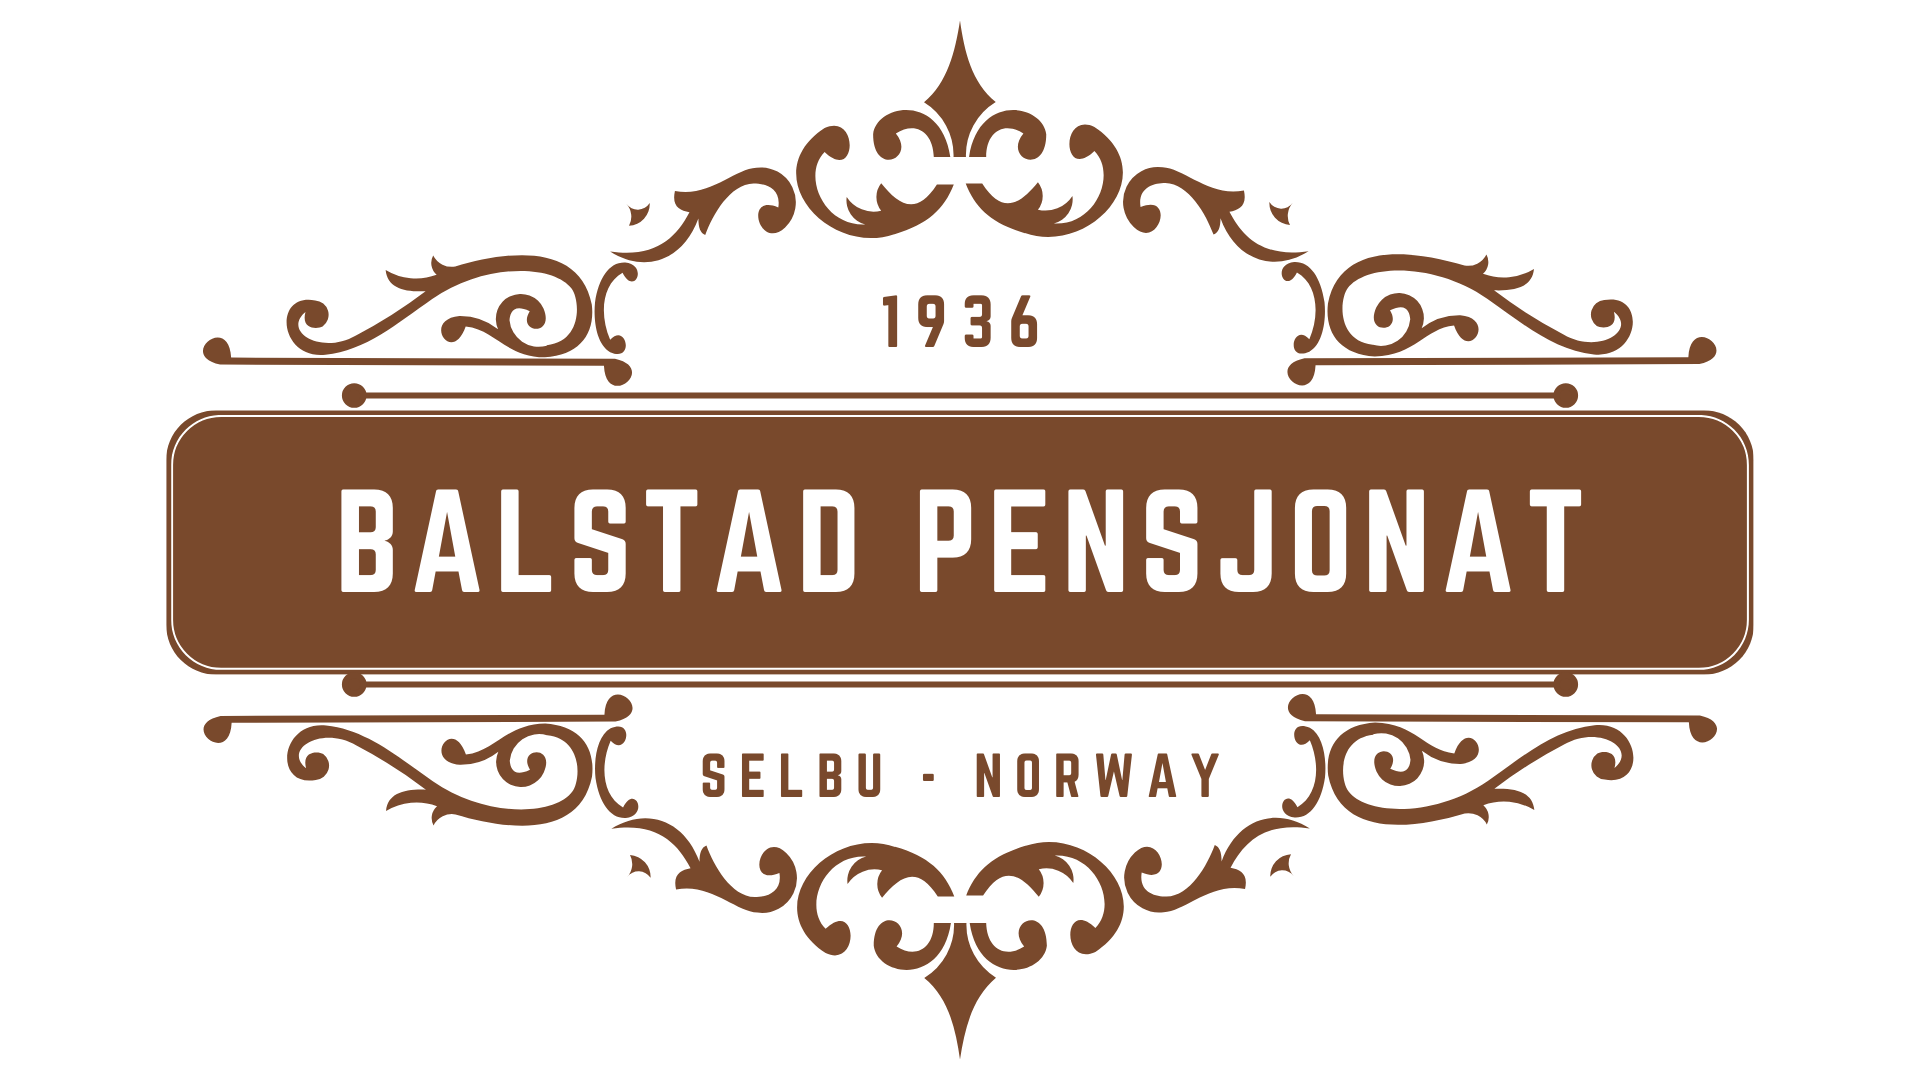 Balstad pensjonat logo